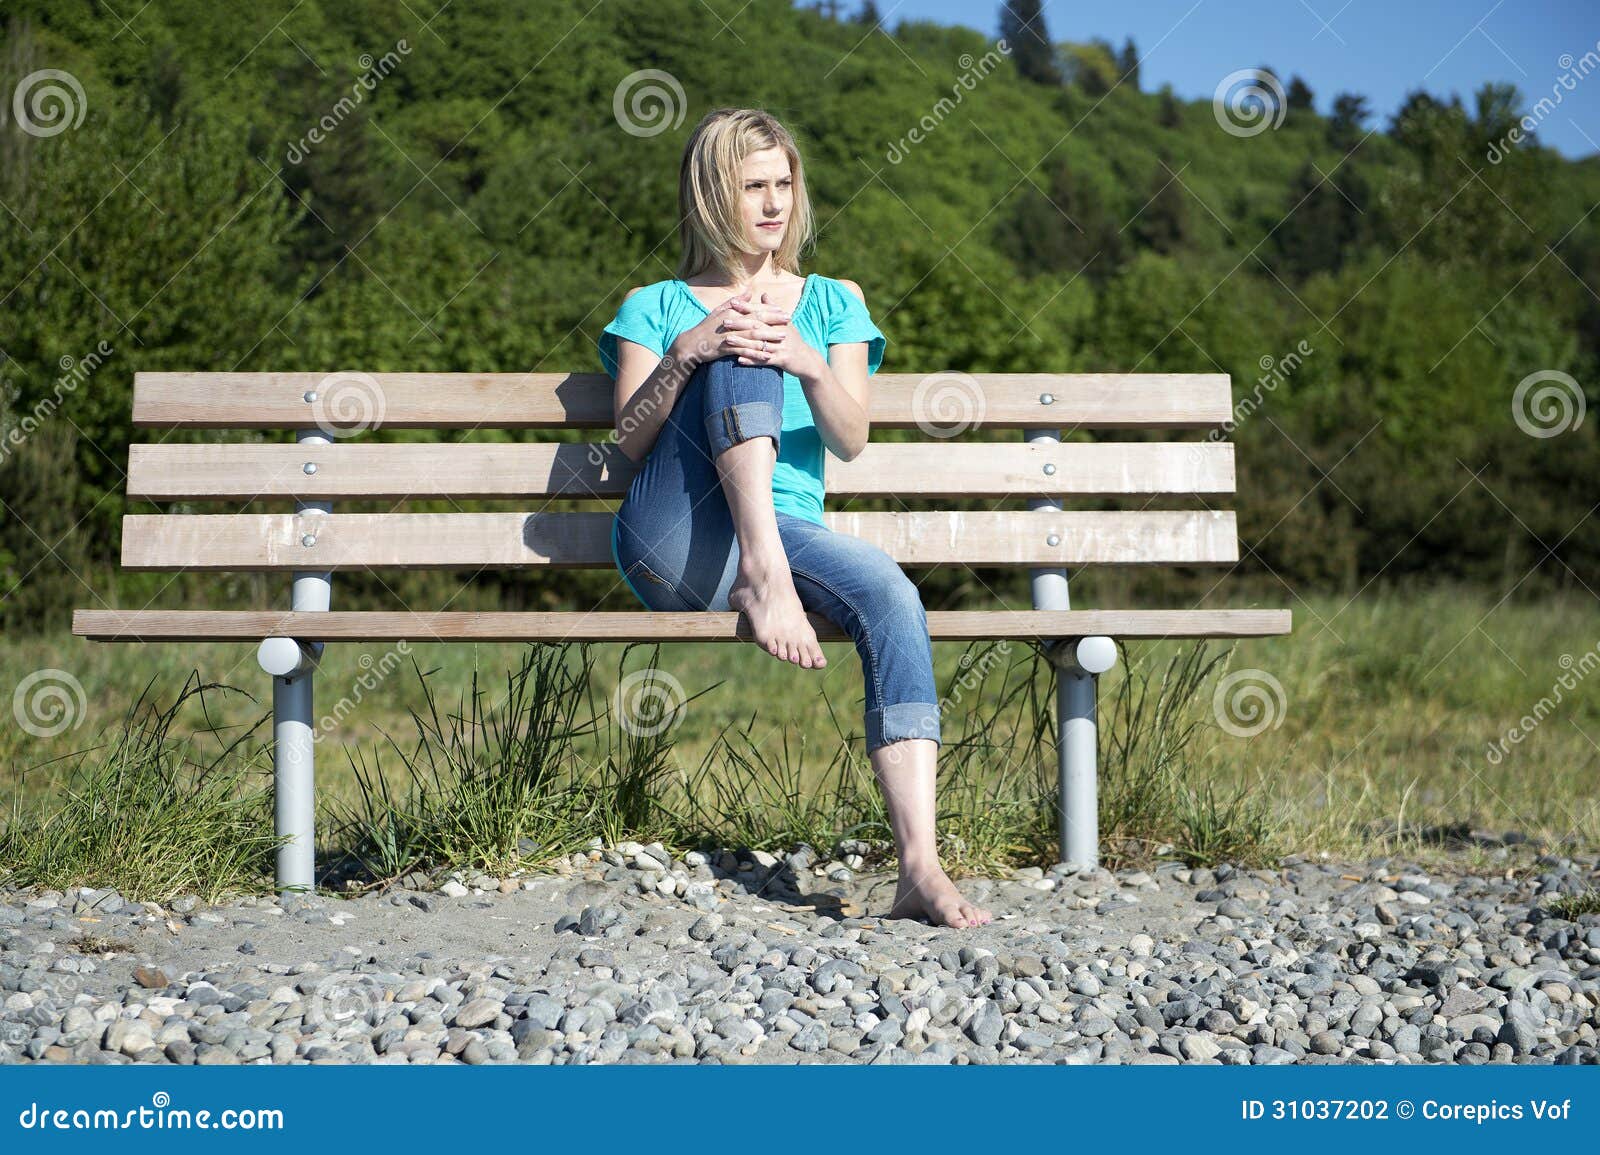 Γυναίκα στον πάγκο. Όμορφη γυναίκα, που κάθεται χωρίς παπούτσια σε έναν ξύλινο πάγκο στο πάρκο, ένα γόνατο που καταρτίζεται στο πρόσωπό της, που απολαμβάνει το θερμό φως του ήλιου άνοιξη